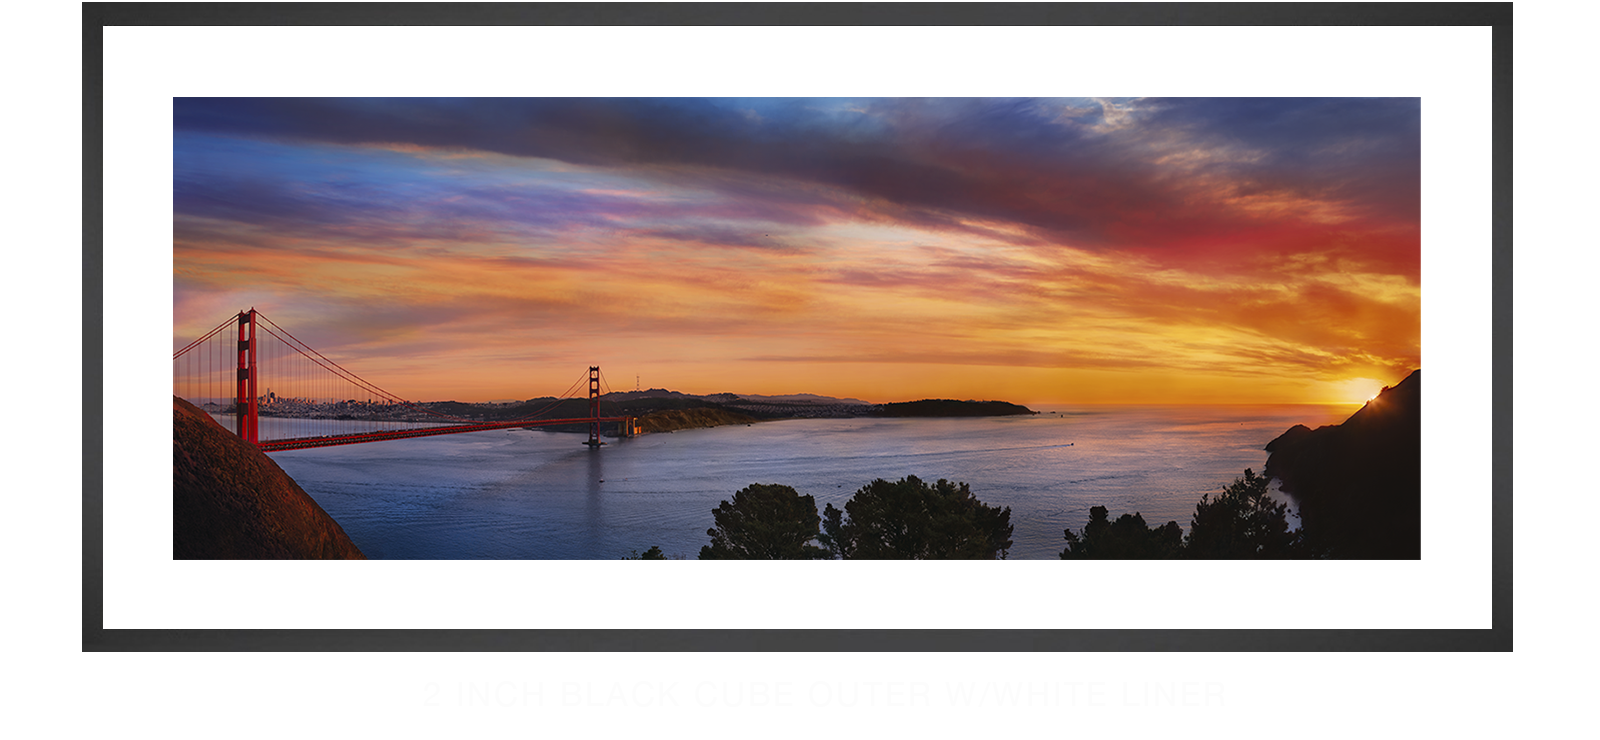 9GoldenGateBridge 2 Inch Black Cube Outer w_Wht Liner T